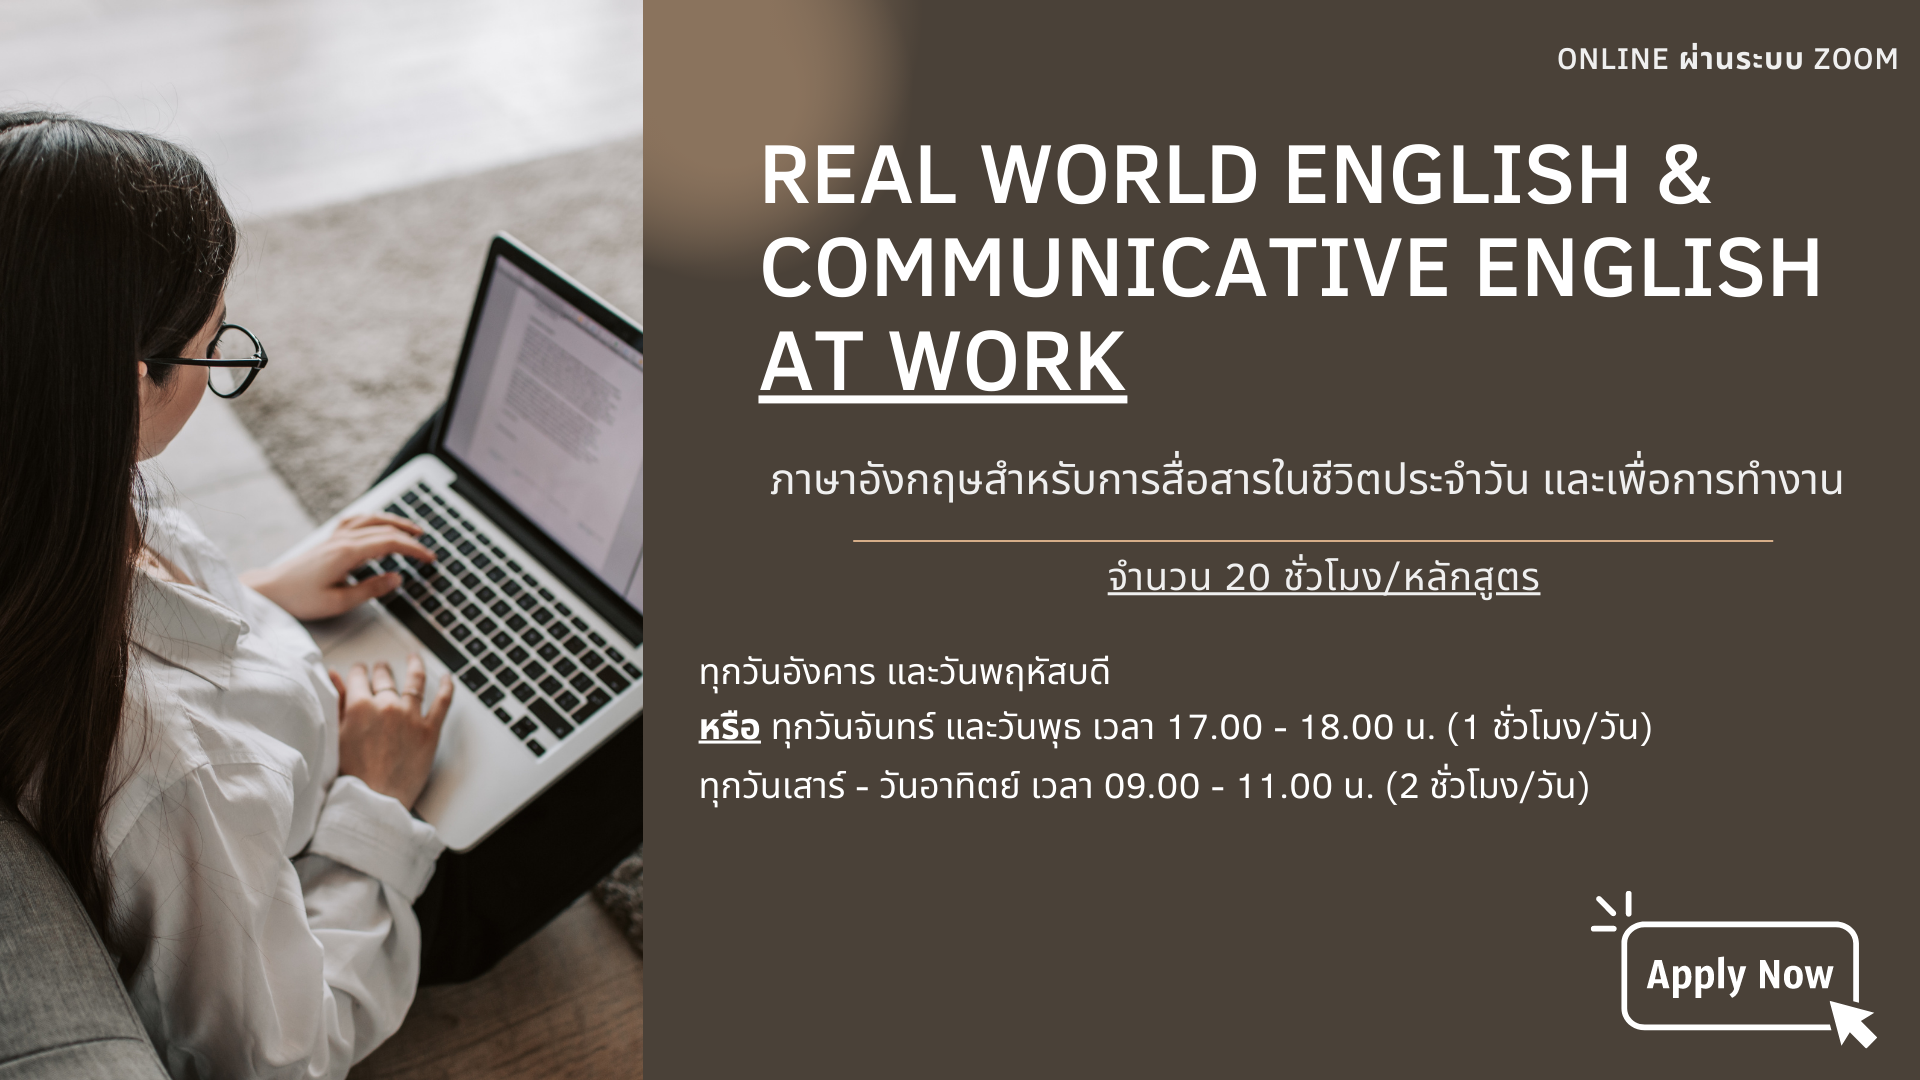 ภาษาอังกฤษสำหรับการสื่อสารในชีวิตประจำวัน และเพื่อ การทำงาน (Real World English and Communicative English at Work)